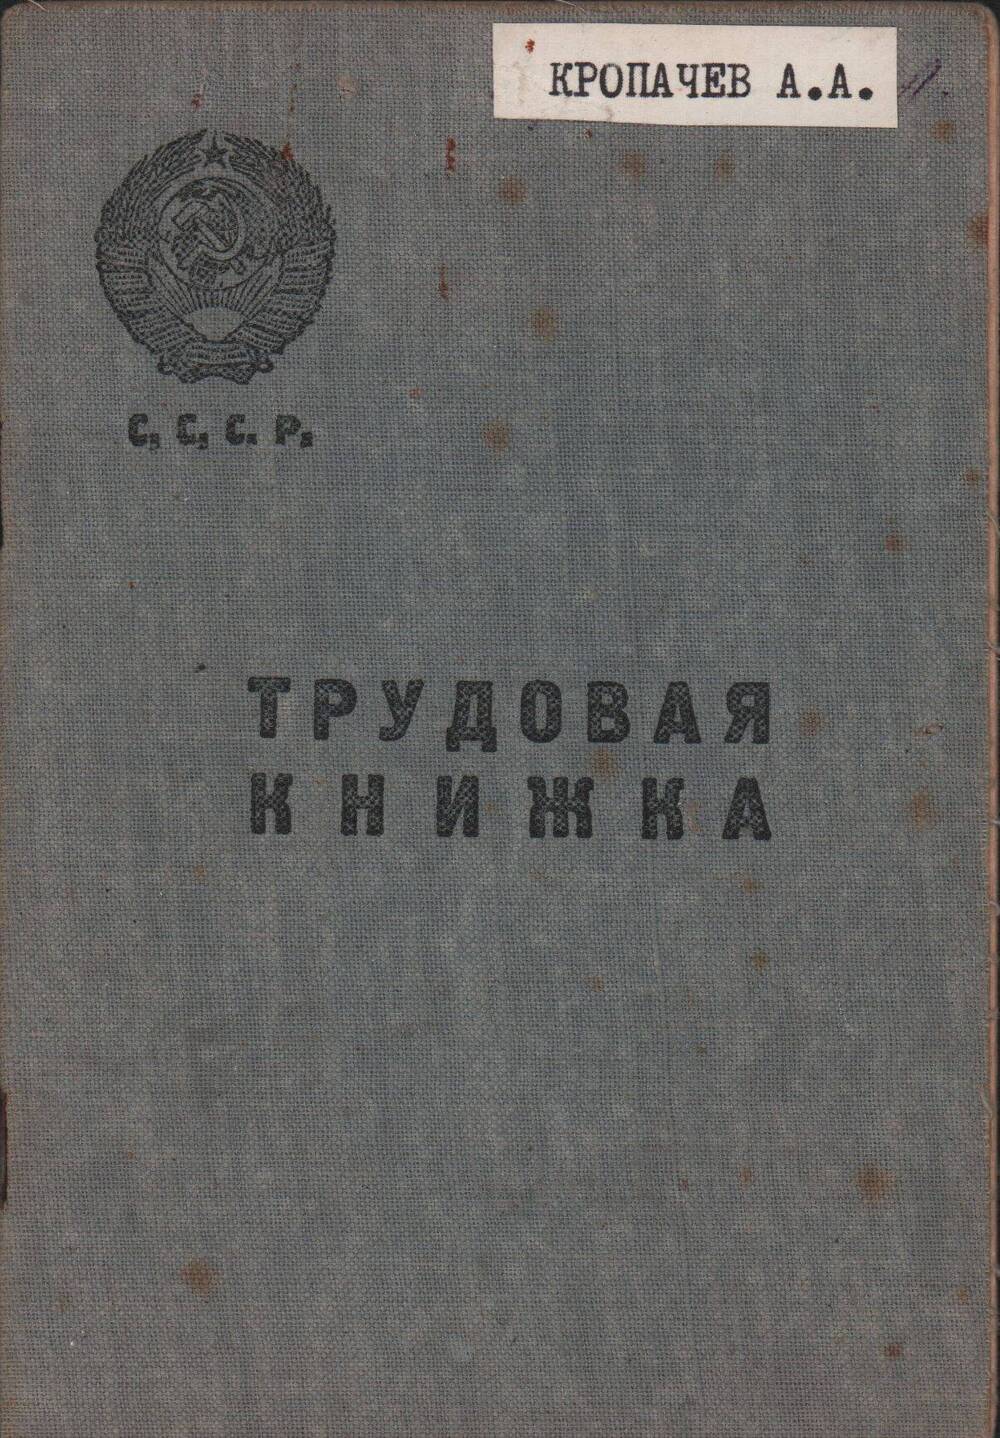 Трудовая книжка установленного образца Кропачева Александра Александровича с записями с 9 июля 1929 года по 14 ноября 1975 г. (со вкладышем)